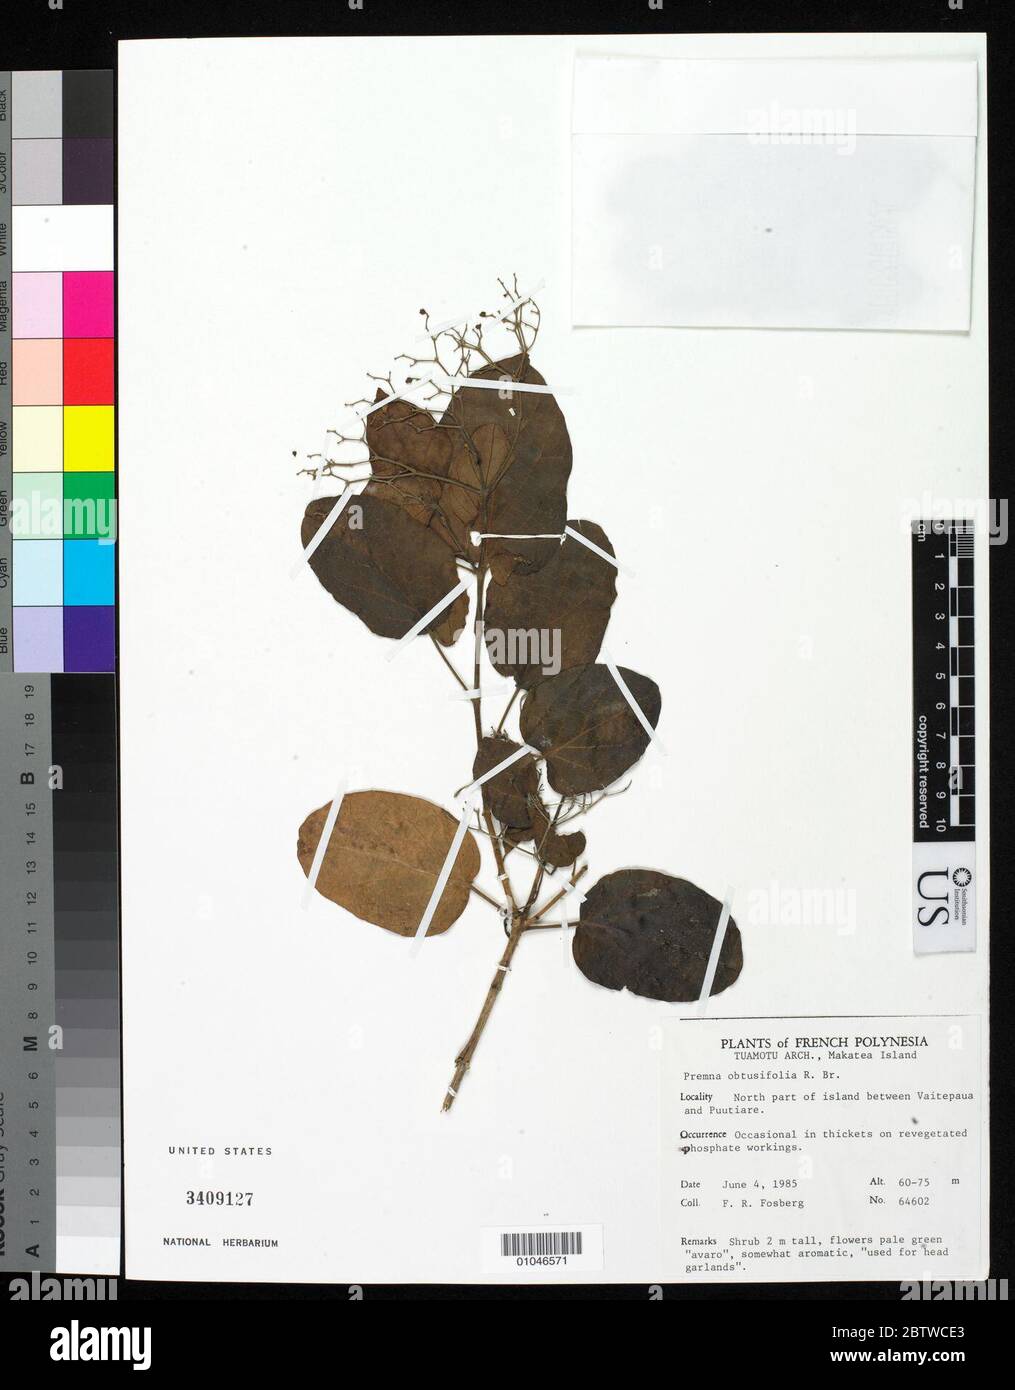 Premna obtusifolia Aiton. Stock Photo